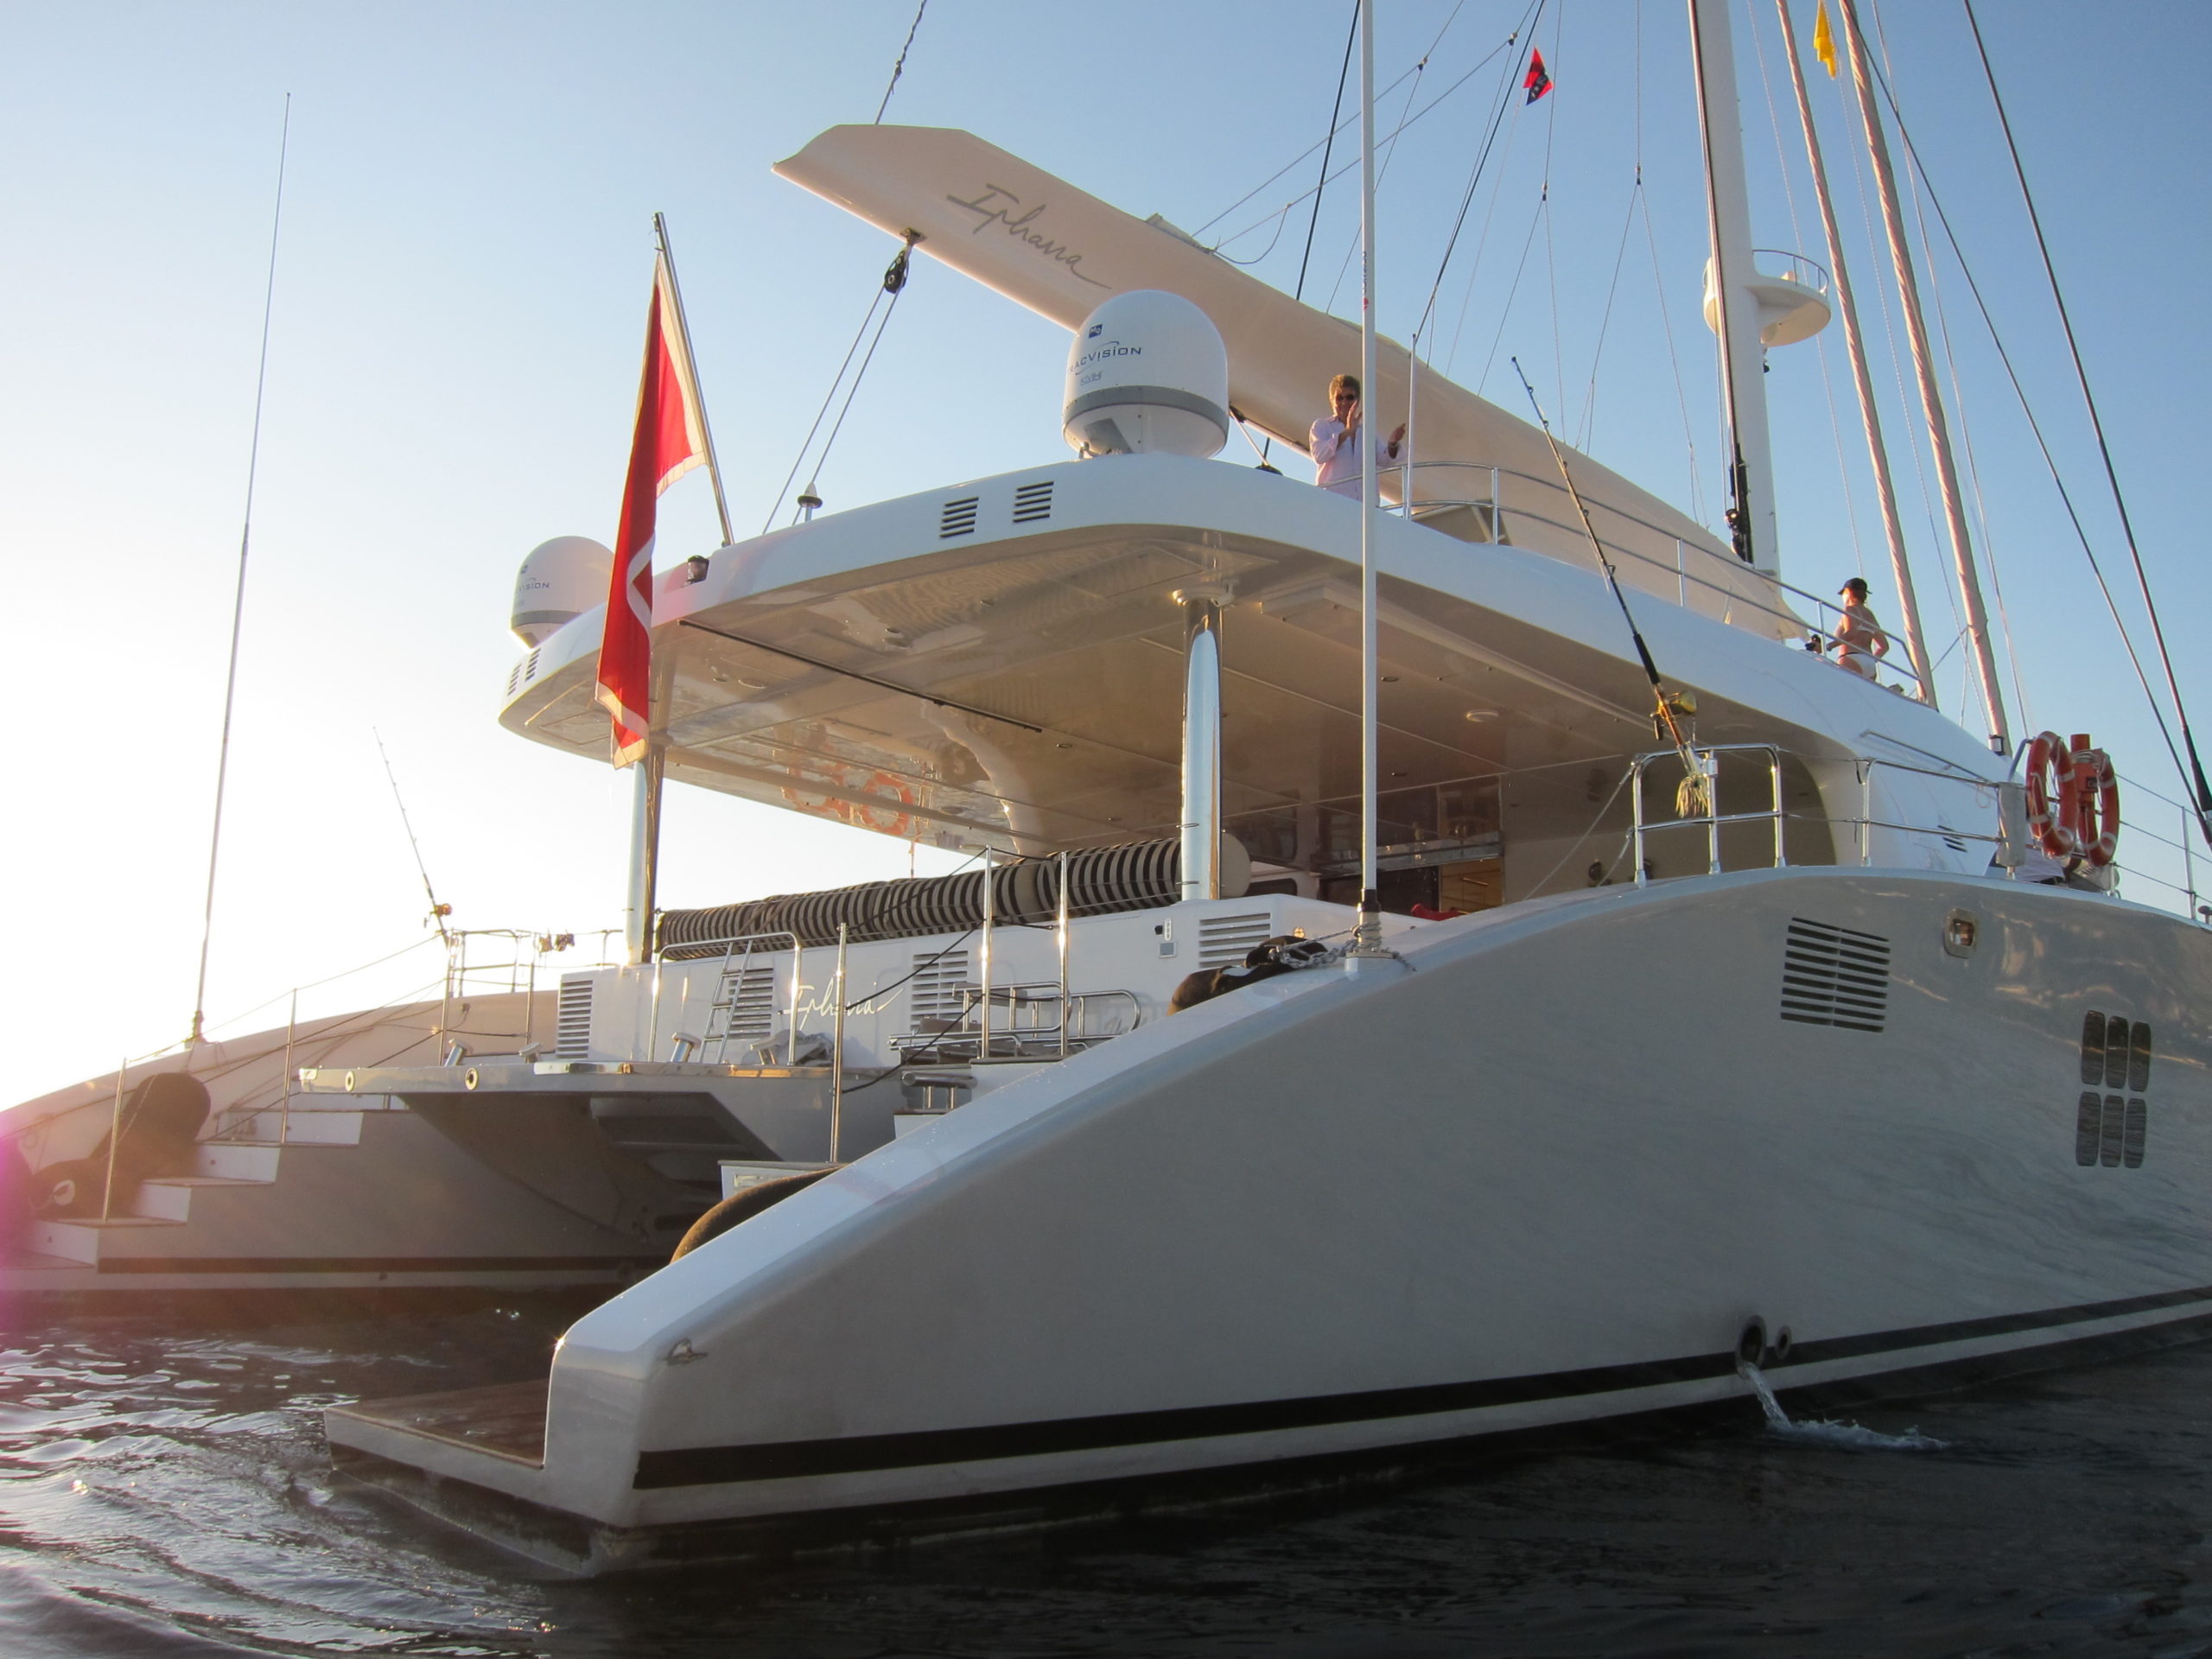 Bateau Ipharra Luxury Catamaran